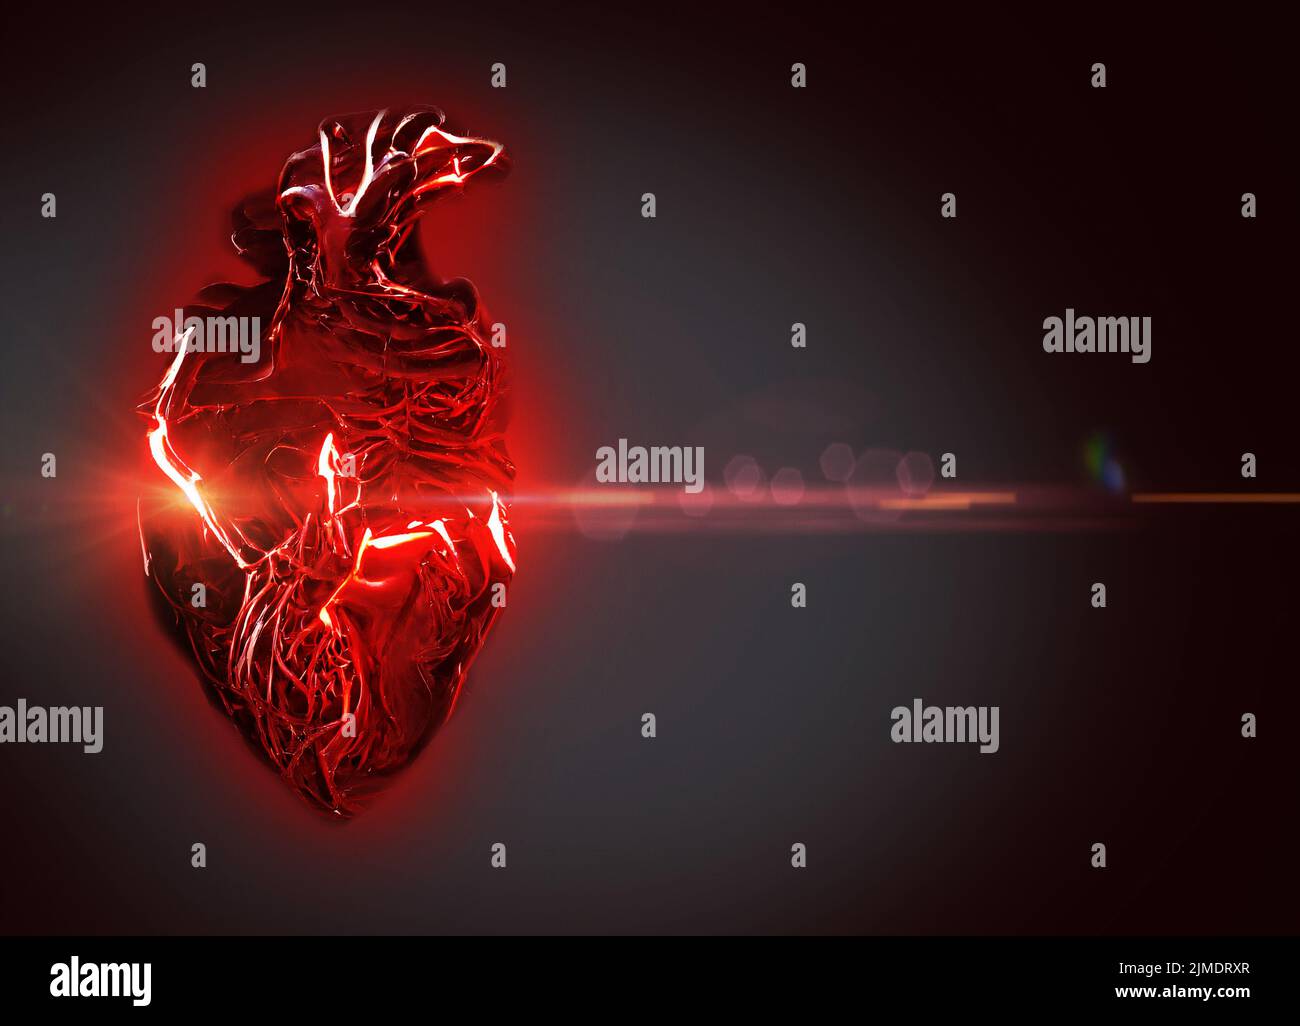 Heart attack, conceptual illustration Stock Photo